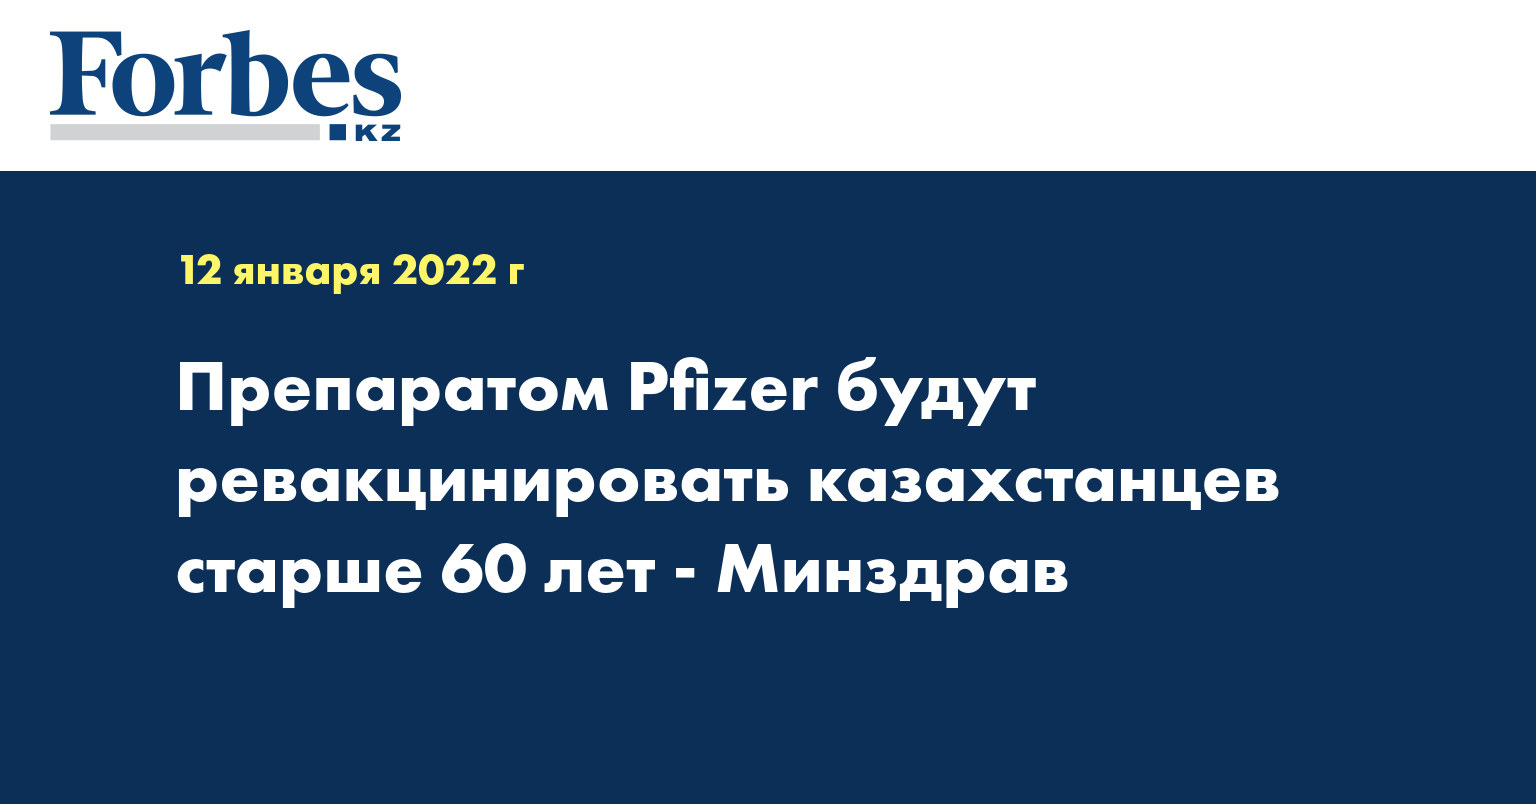 Препаратом Pfizer будут ревакцинировать казахстанцев старше 60 лет - Минздрав